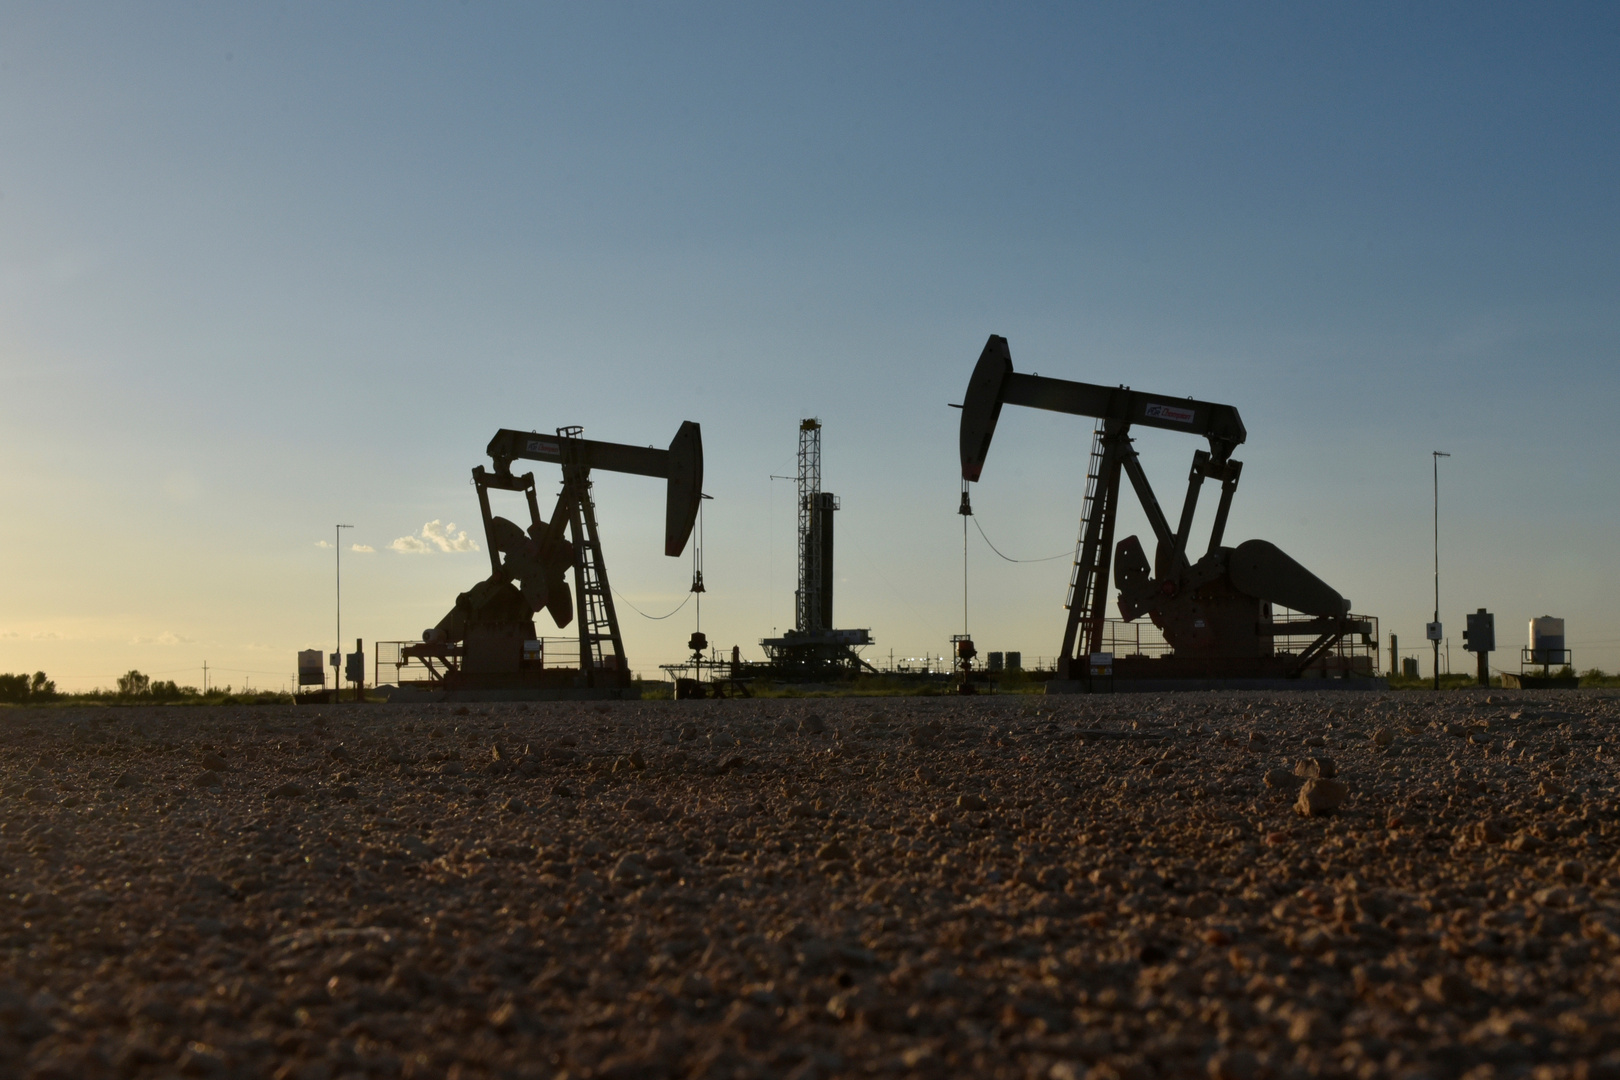 ارتفاع أسعار النفط بعد توقعات متشائمة حول الإنتاج الأمريكي